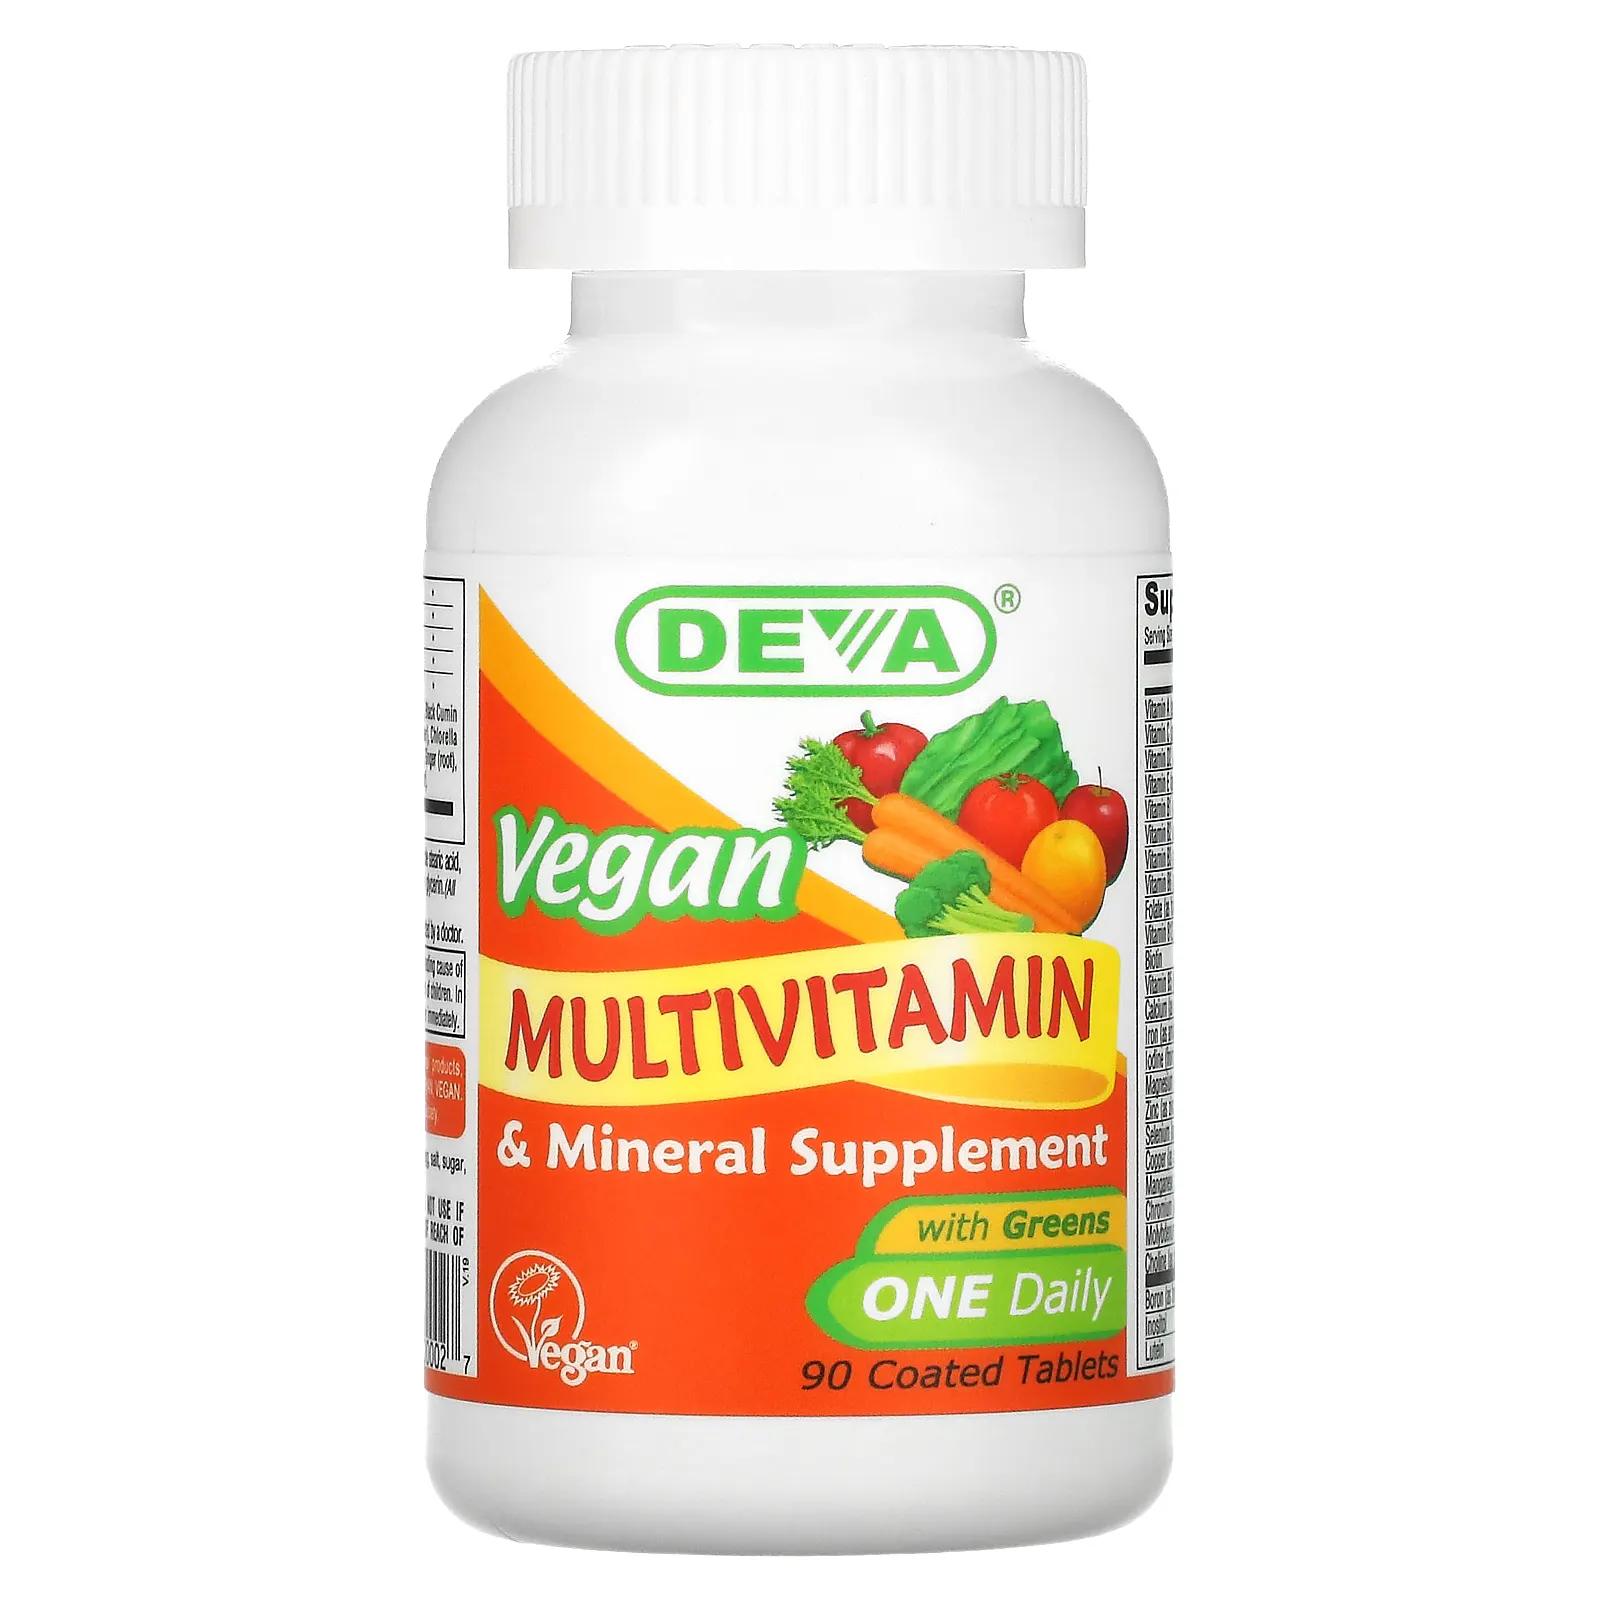 Deva Мультивитаминная и минеральная добавка Веганская 90 таблеток в оболочке deva мультивитаминная и минеральная добавка для веганов один раз в день 90 таблеток